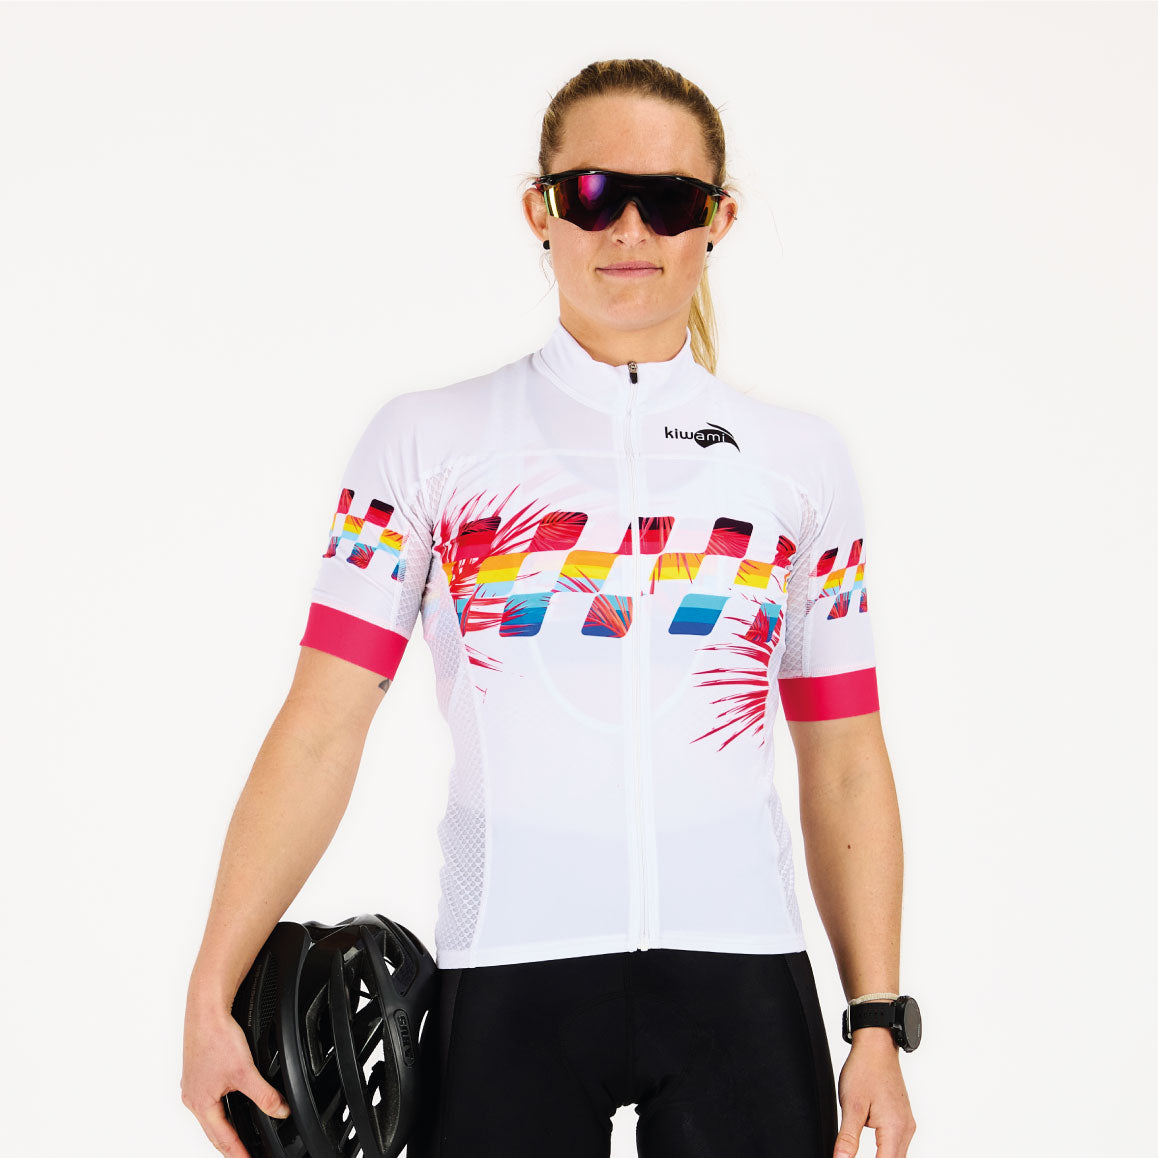 maillot cyclisme femme blanc et coloré fabrication française kiwami sports